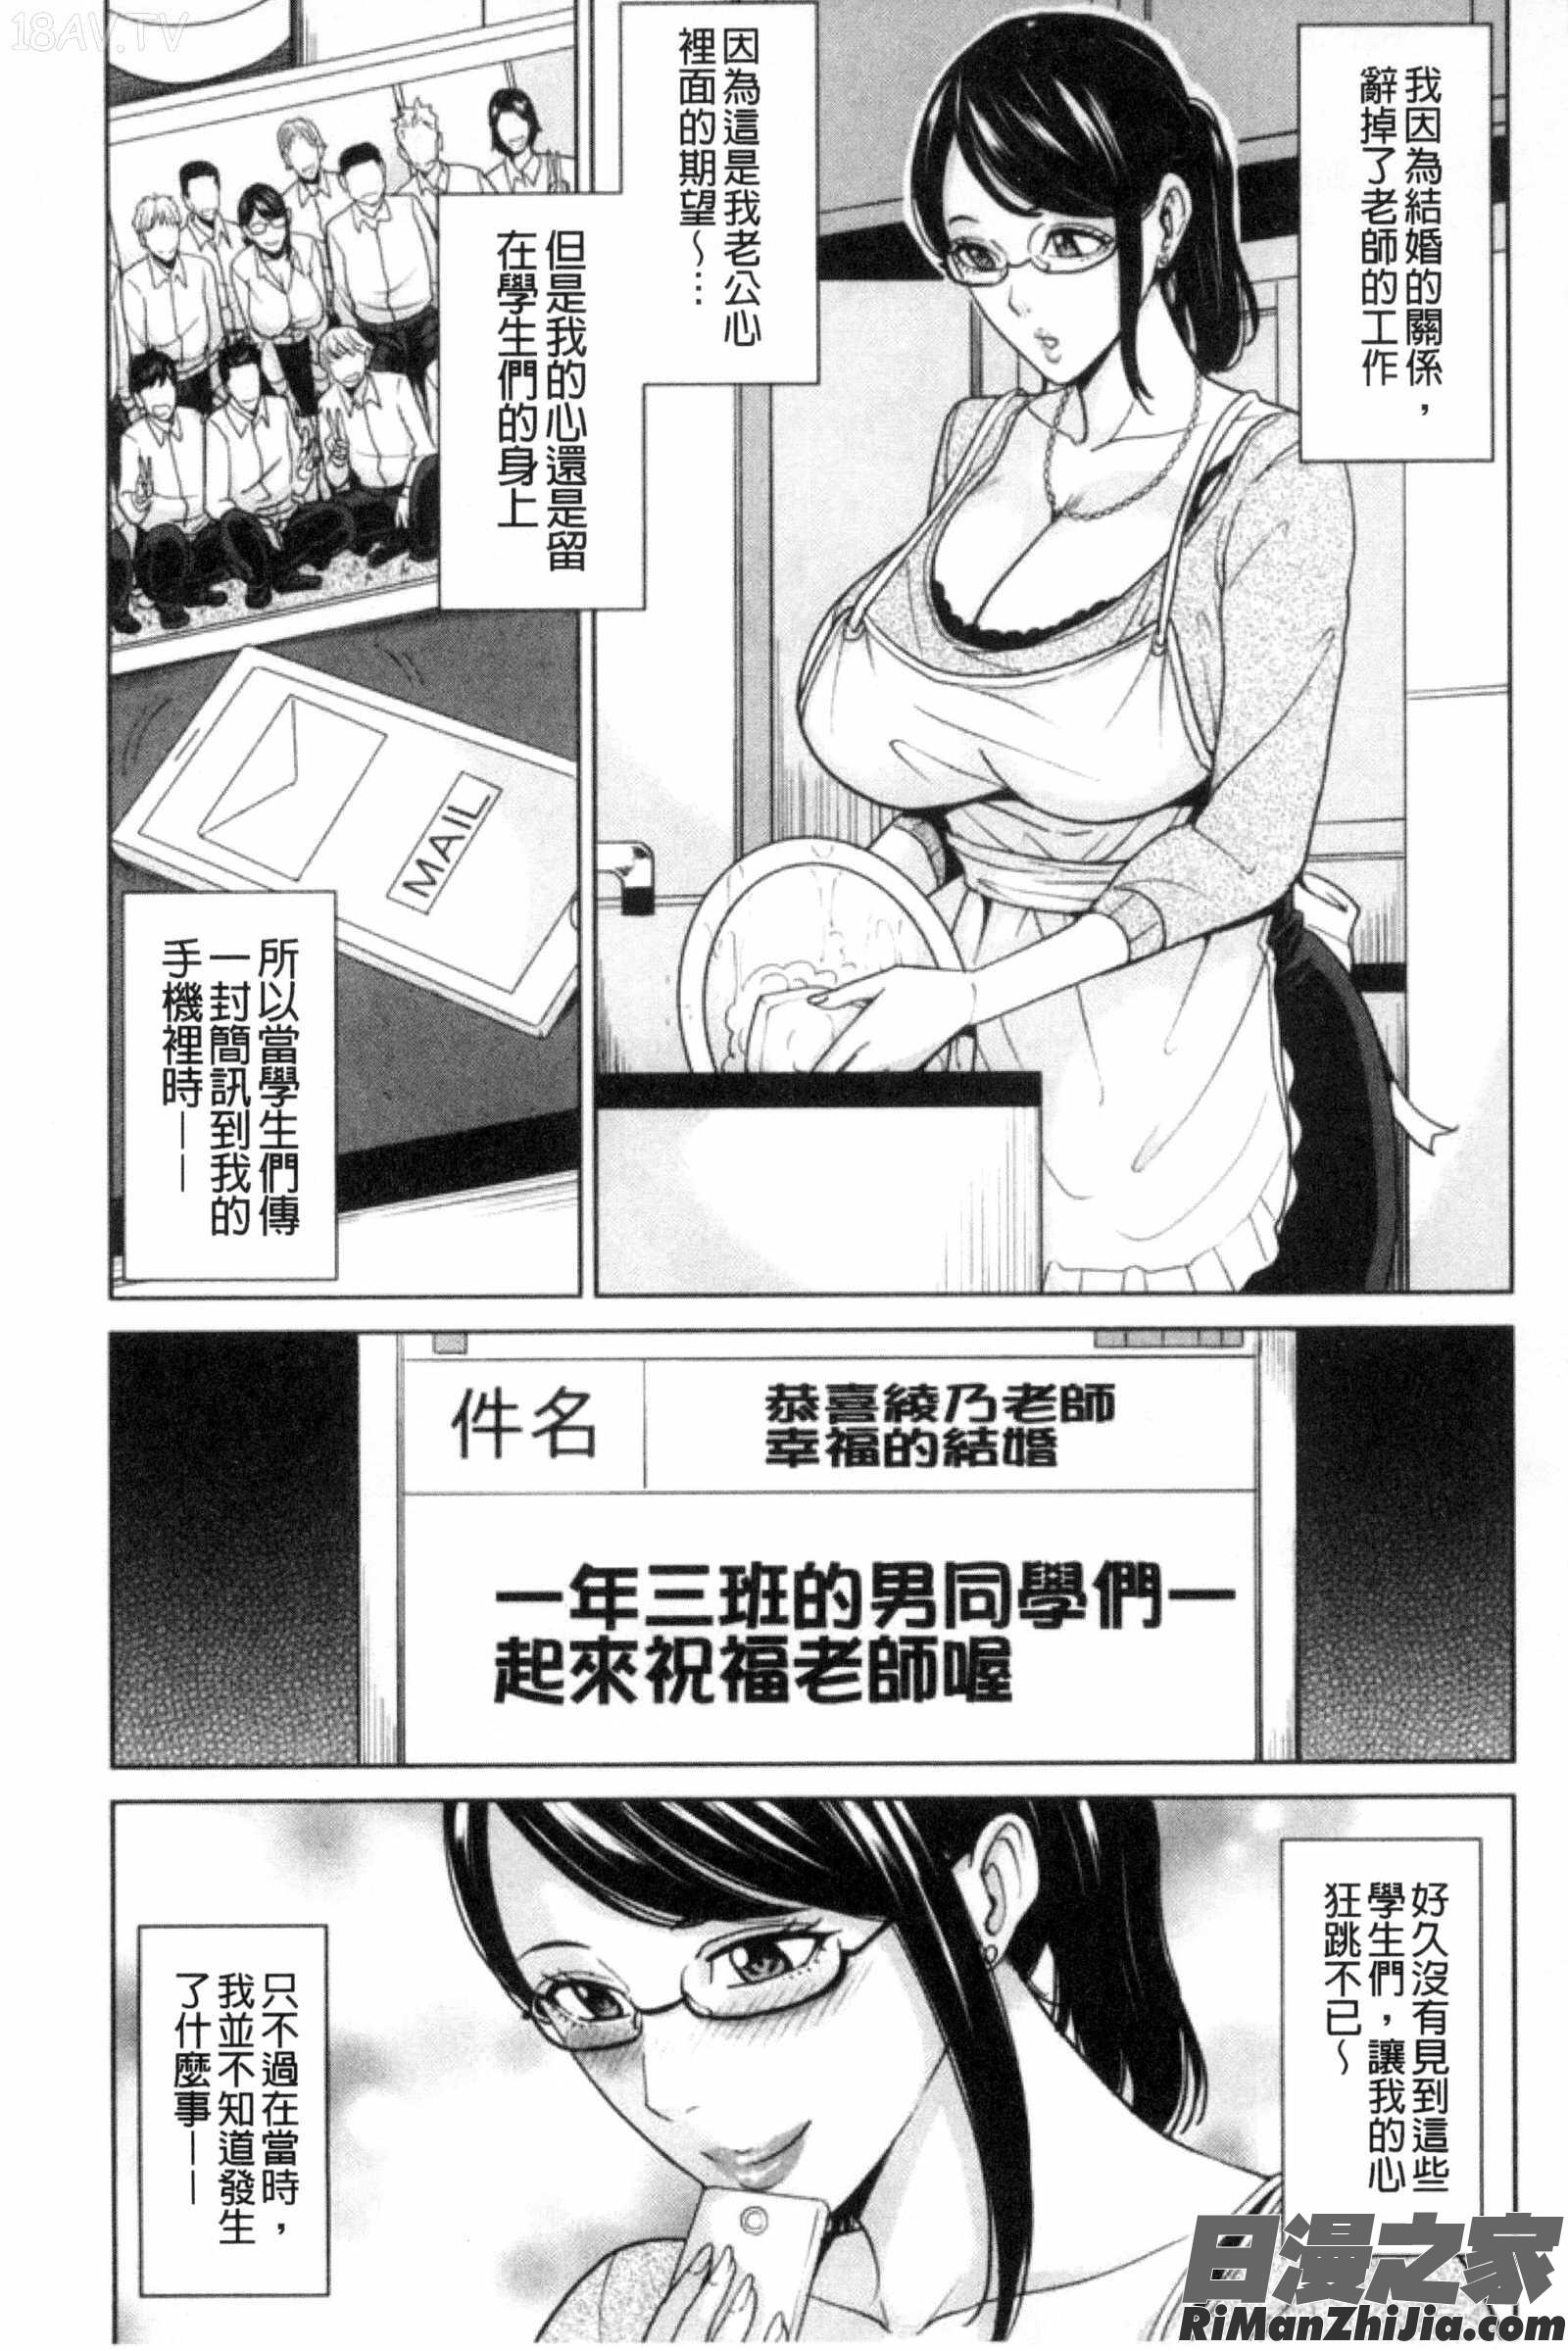 兄嫂淫蕩女性生活_兄嫁ビッチライフ漫画 免费阅读 整部漫画 126.jpg